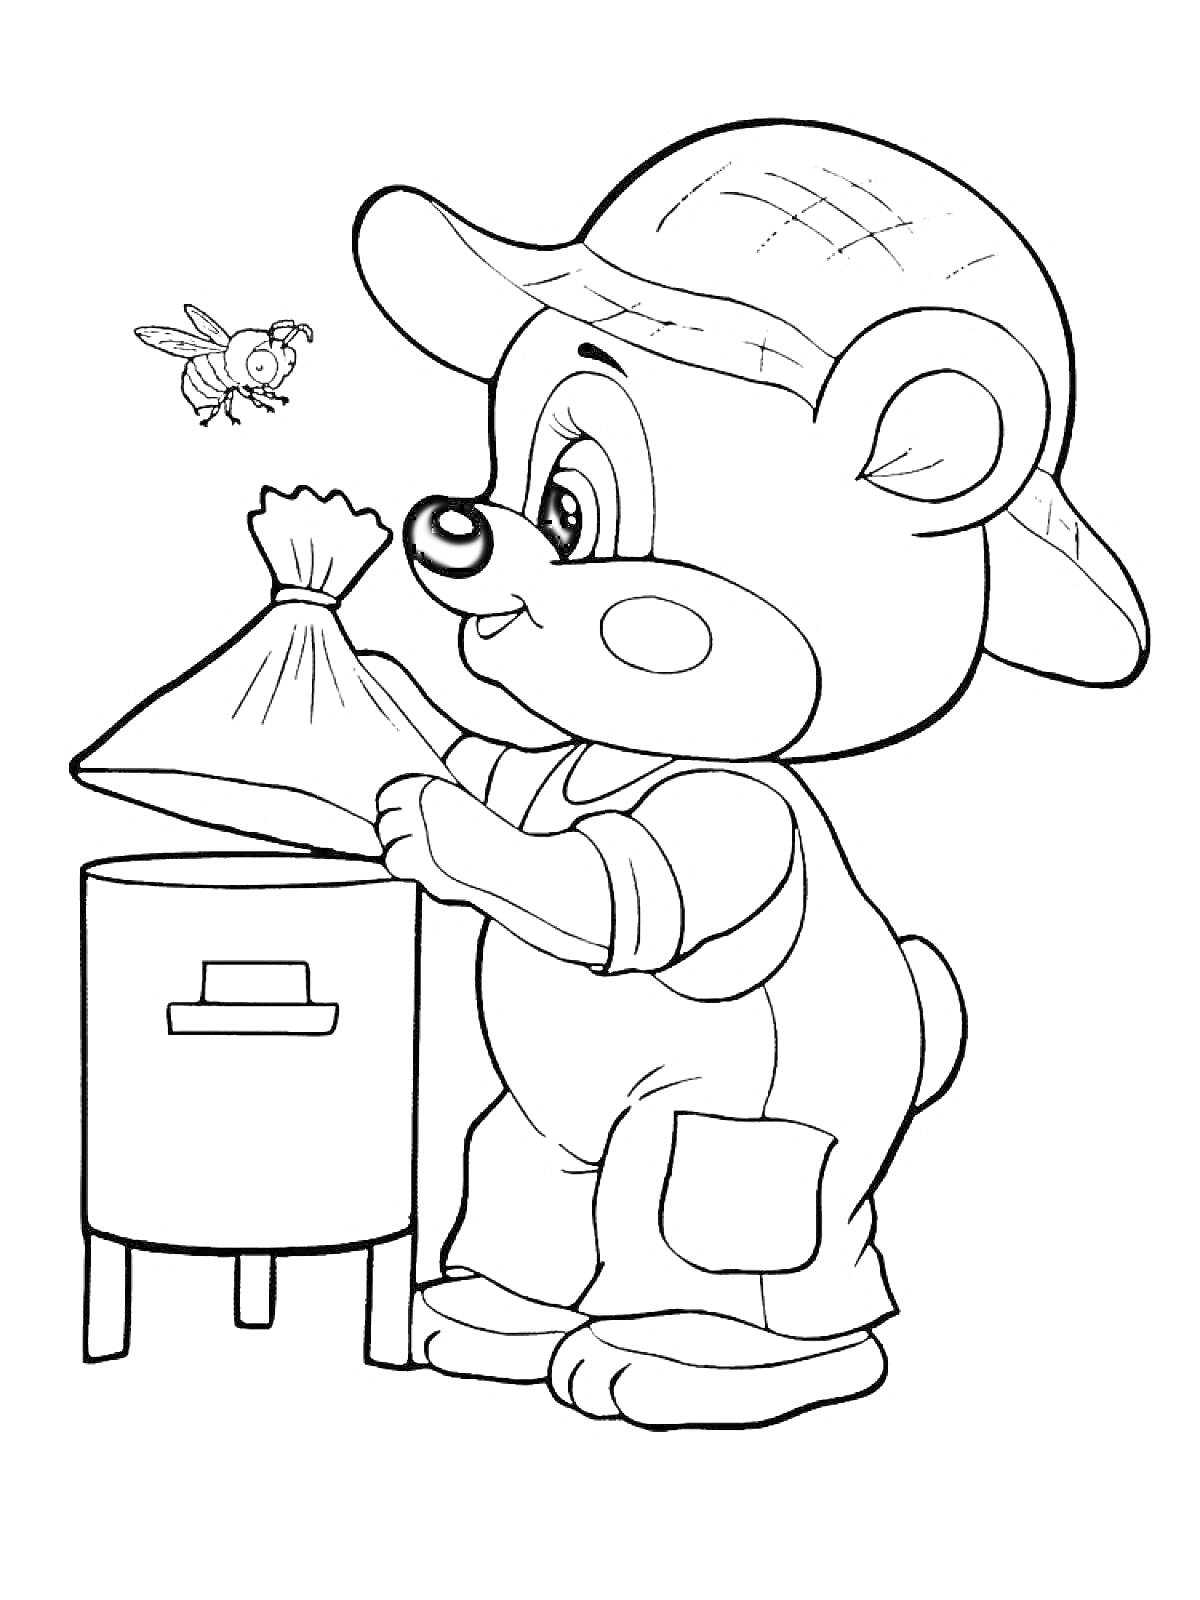 Медвежонок в шляпе, собирающий мед на пасеке (медвежонок с мешочком, улей и пчела)